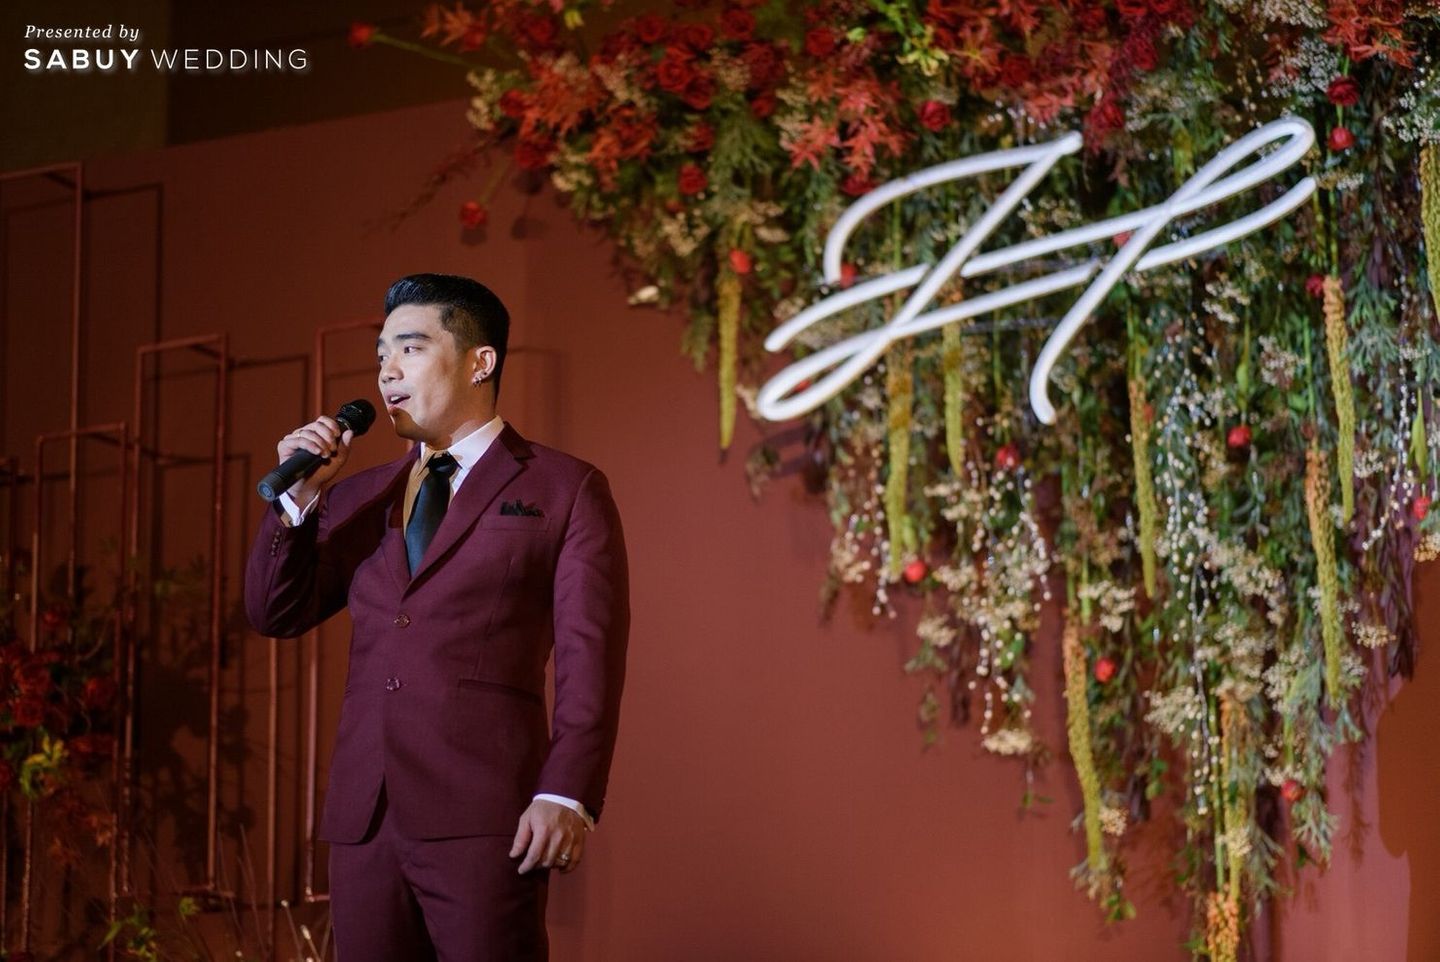 สถานที่แต่งงาน,โรงแรม,เจ้าบ่าว,ชุดเจ้าบ่าว,ดอกไม้,จัดดอกไม้งานแต่ง,ตกแต่งงานแต่ง,เวทีงานแต่ง,พิธีแต่งงาน รีวิวงานแต่งสีแดง สวยแพงสุดชิค ลุคจีนโมเดิร์น @Conrad Bangkok